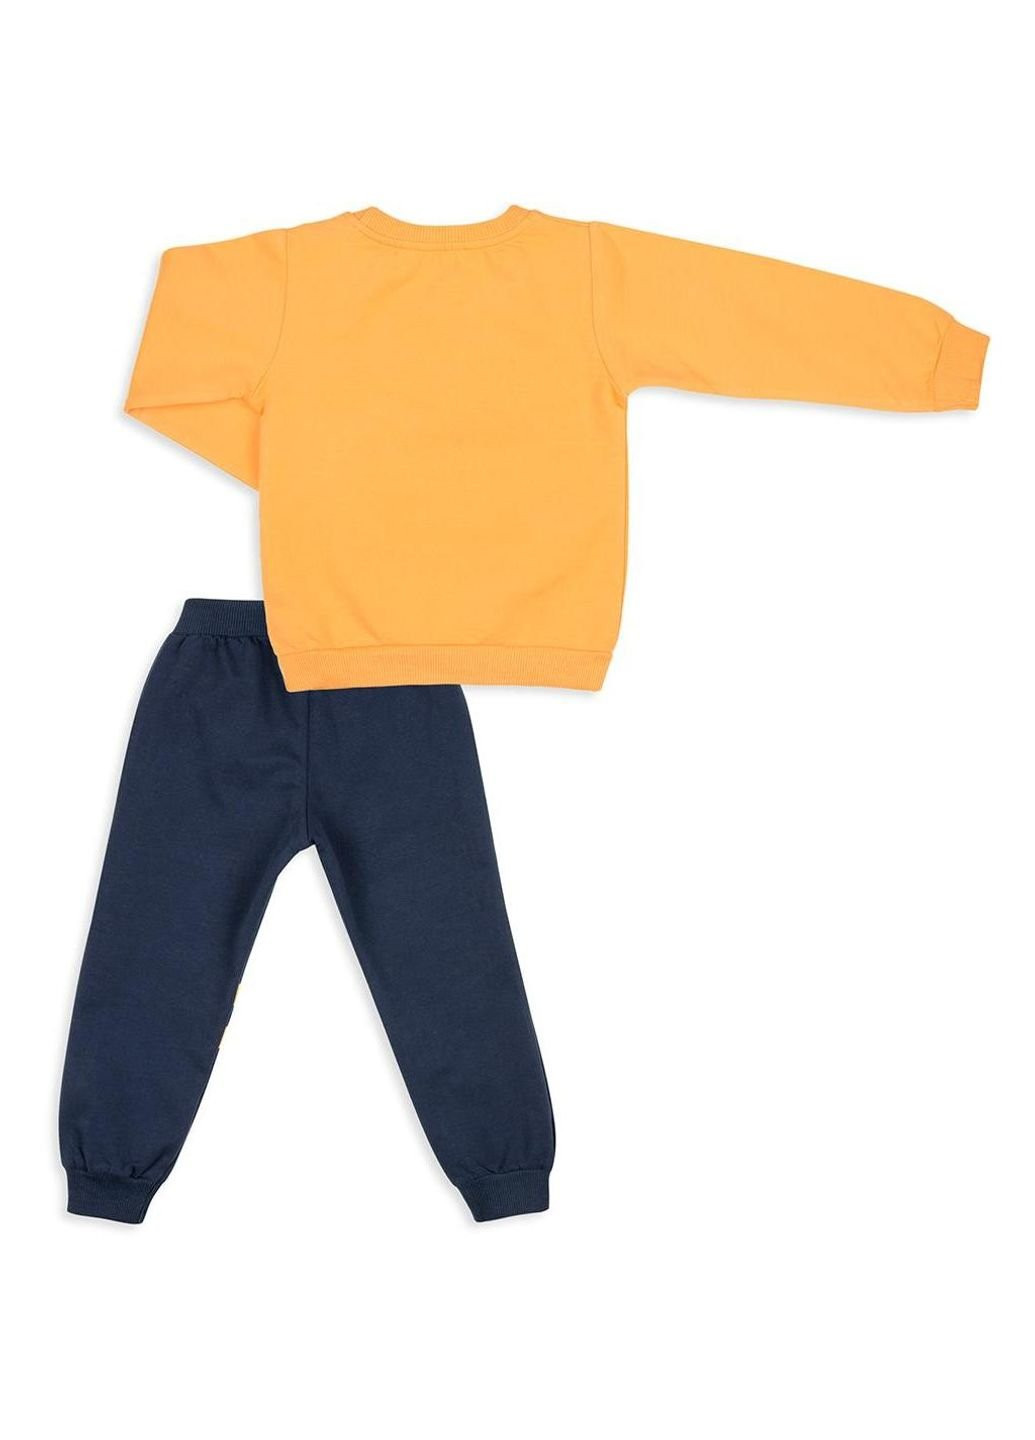 Темно-синий демисезонный набор детской одежды "team happy" (12150-98b-yellow) Breeze